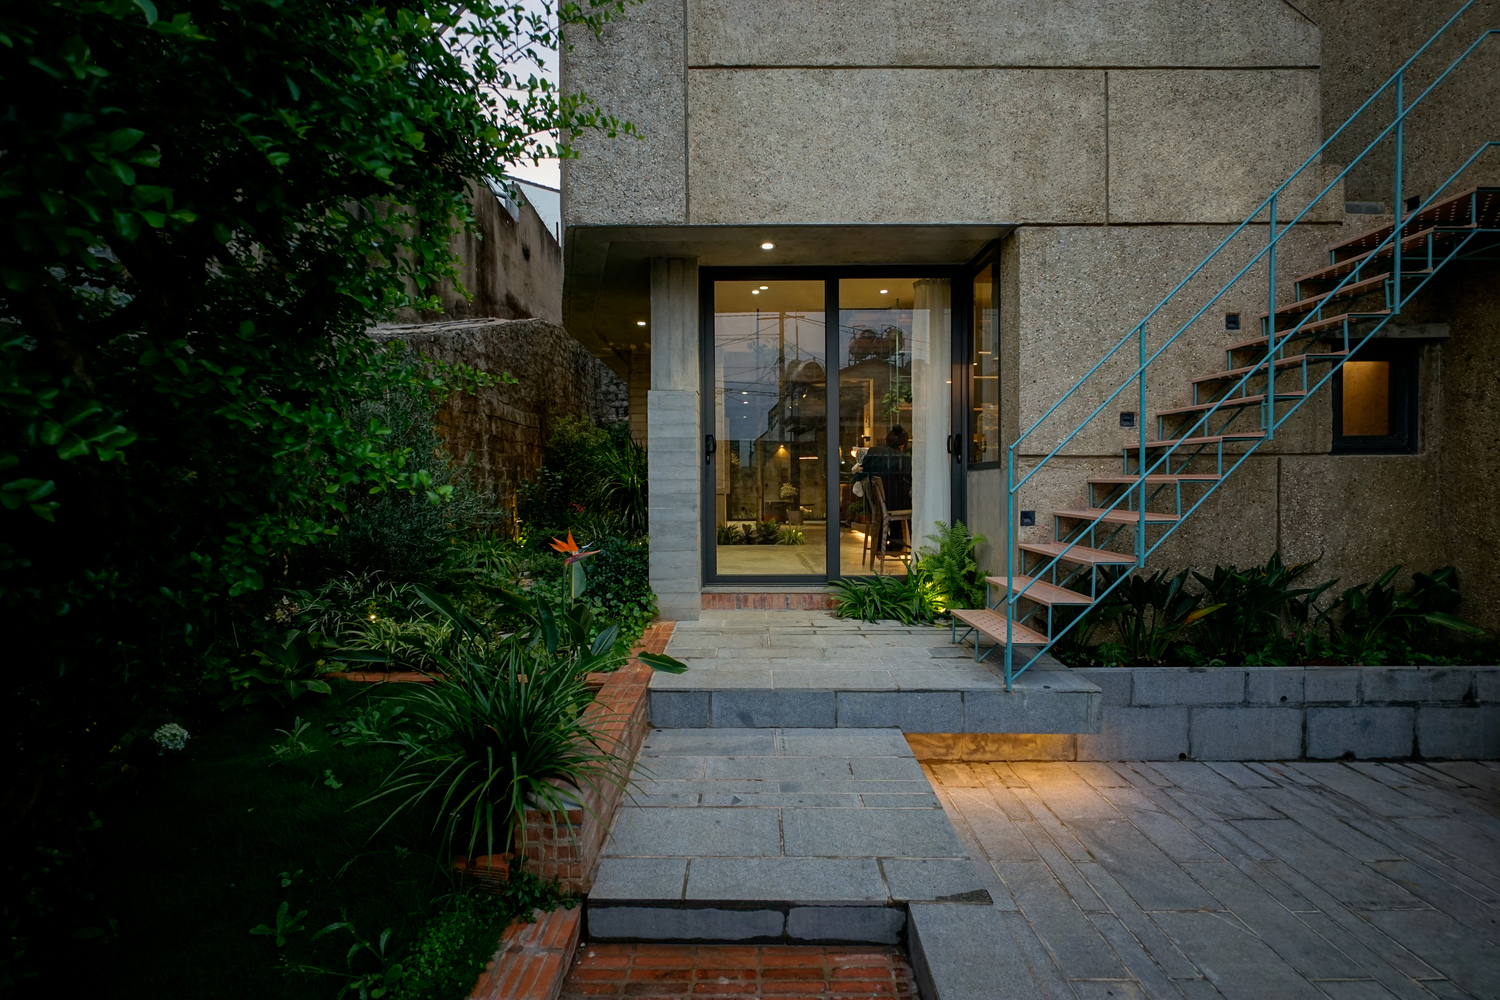 CHI's House: Kiến trúc phản ánh những yếu tố đối lập, tạo nên sự bí ẩn cho ngôi nhà giữa lòng Đà Lạt - Ảnh 17